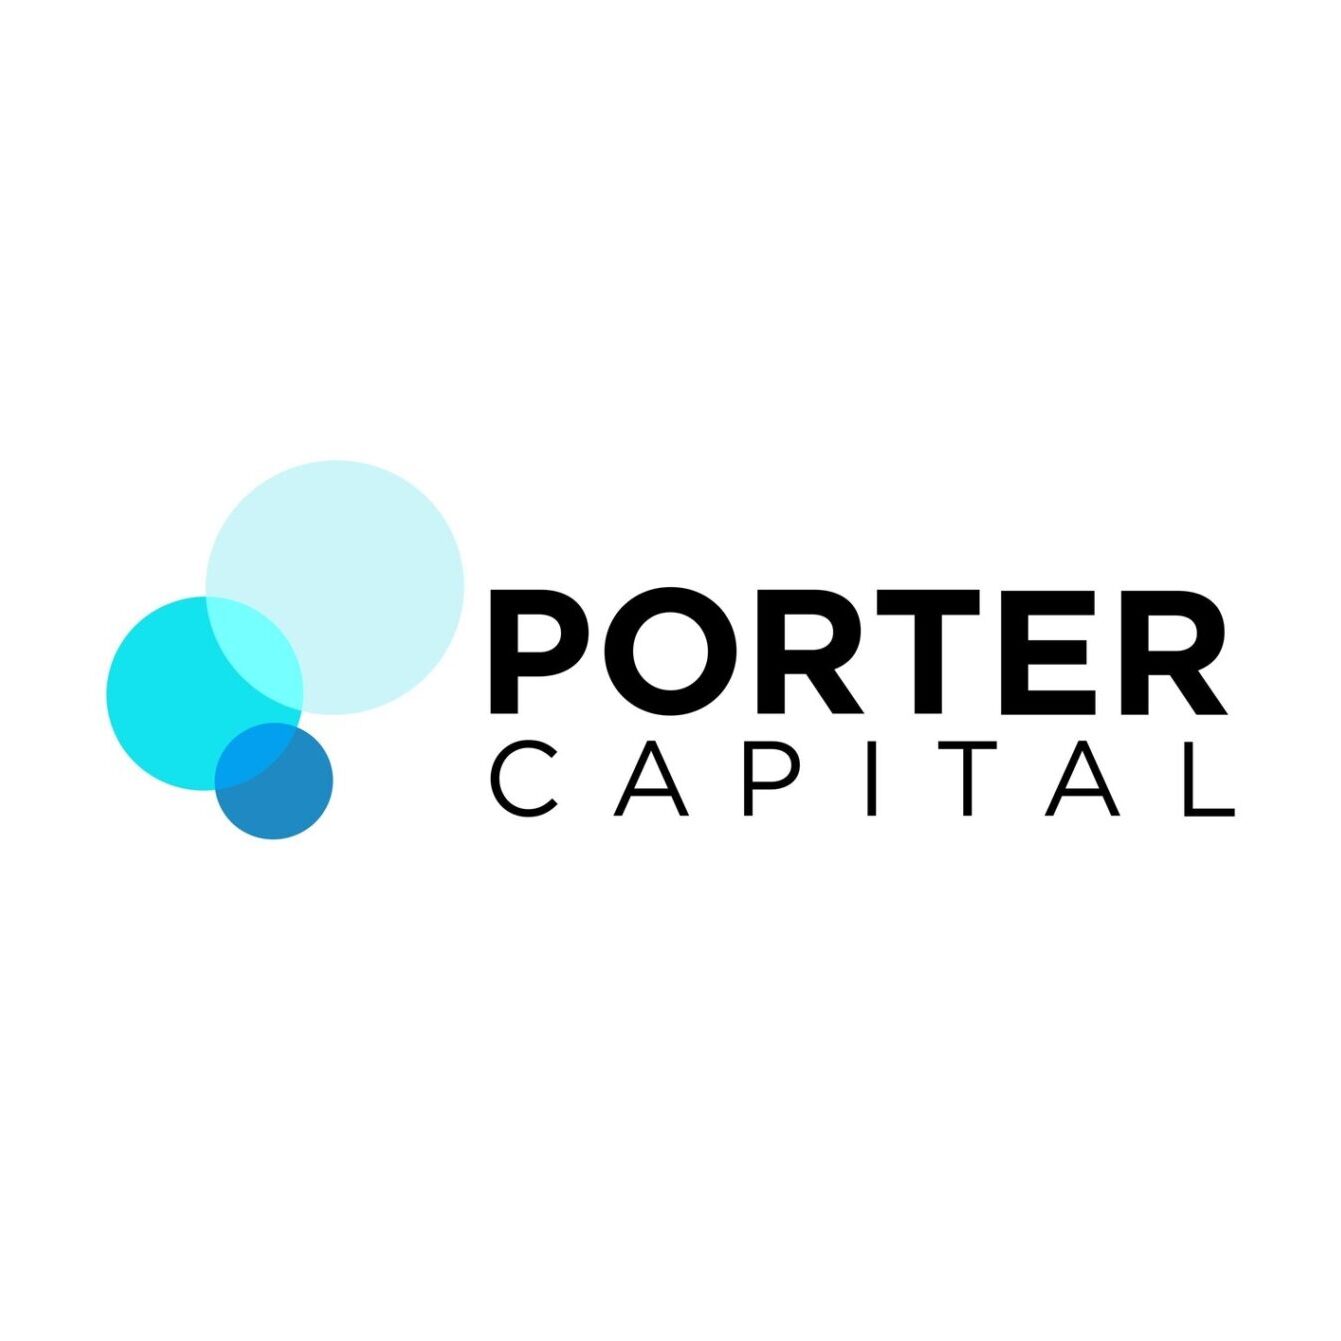 Porter Capital logo for copywriting portfolio